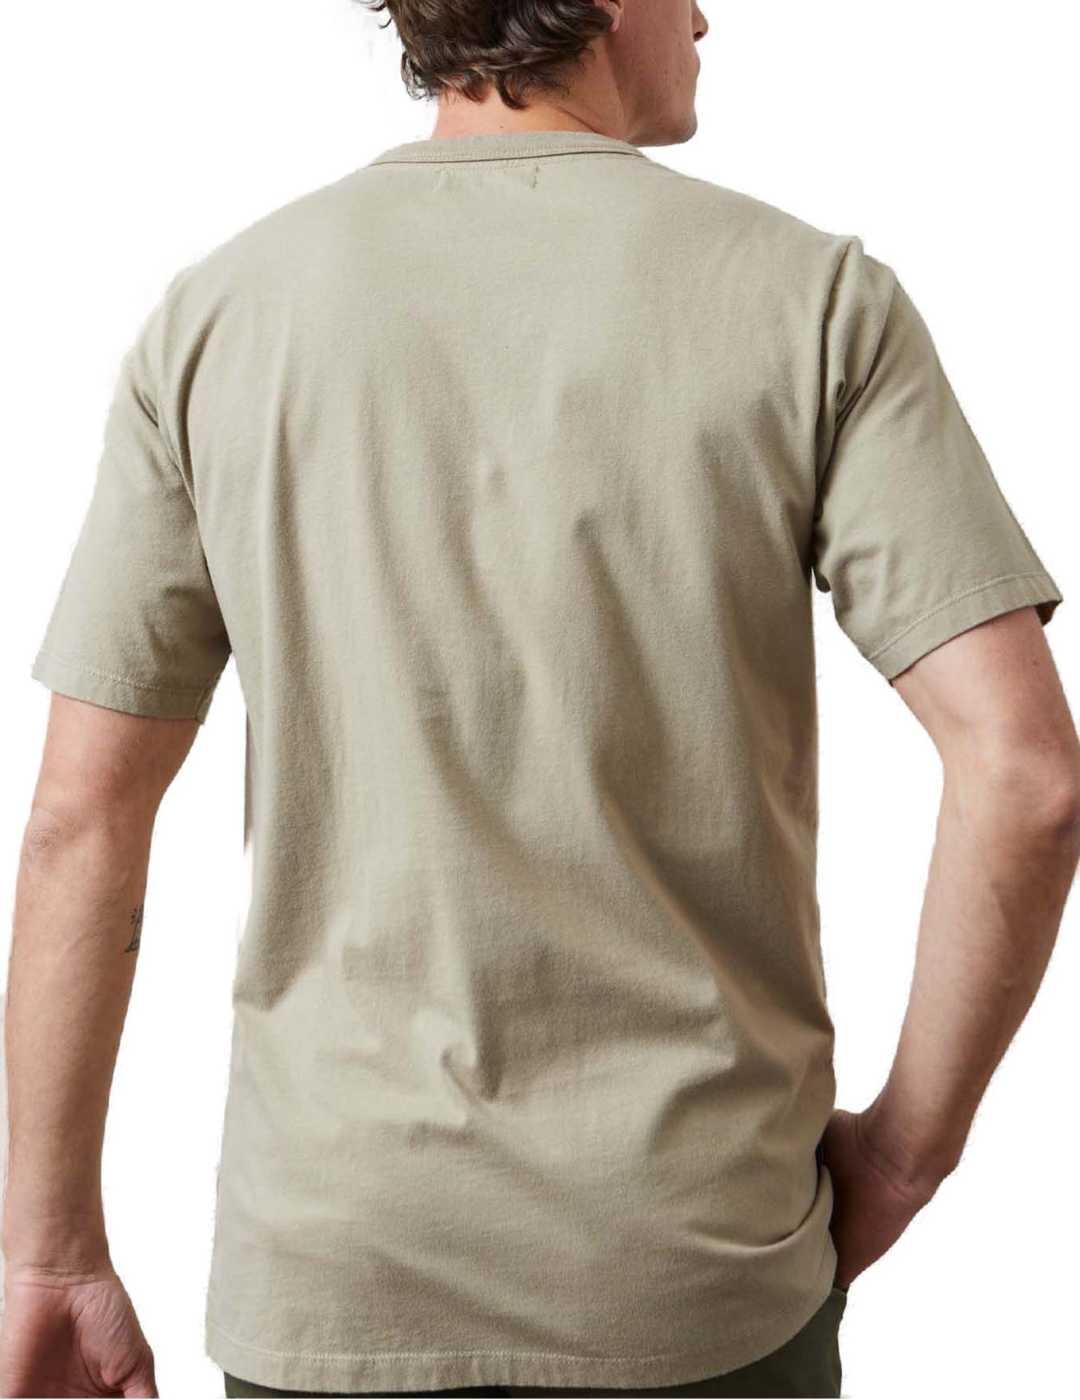 Camiseta Altonadock verde kaki km 0 manga corta hombre